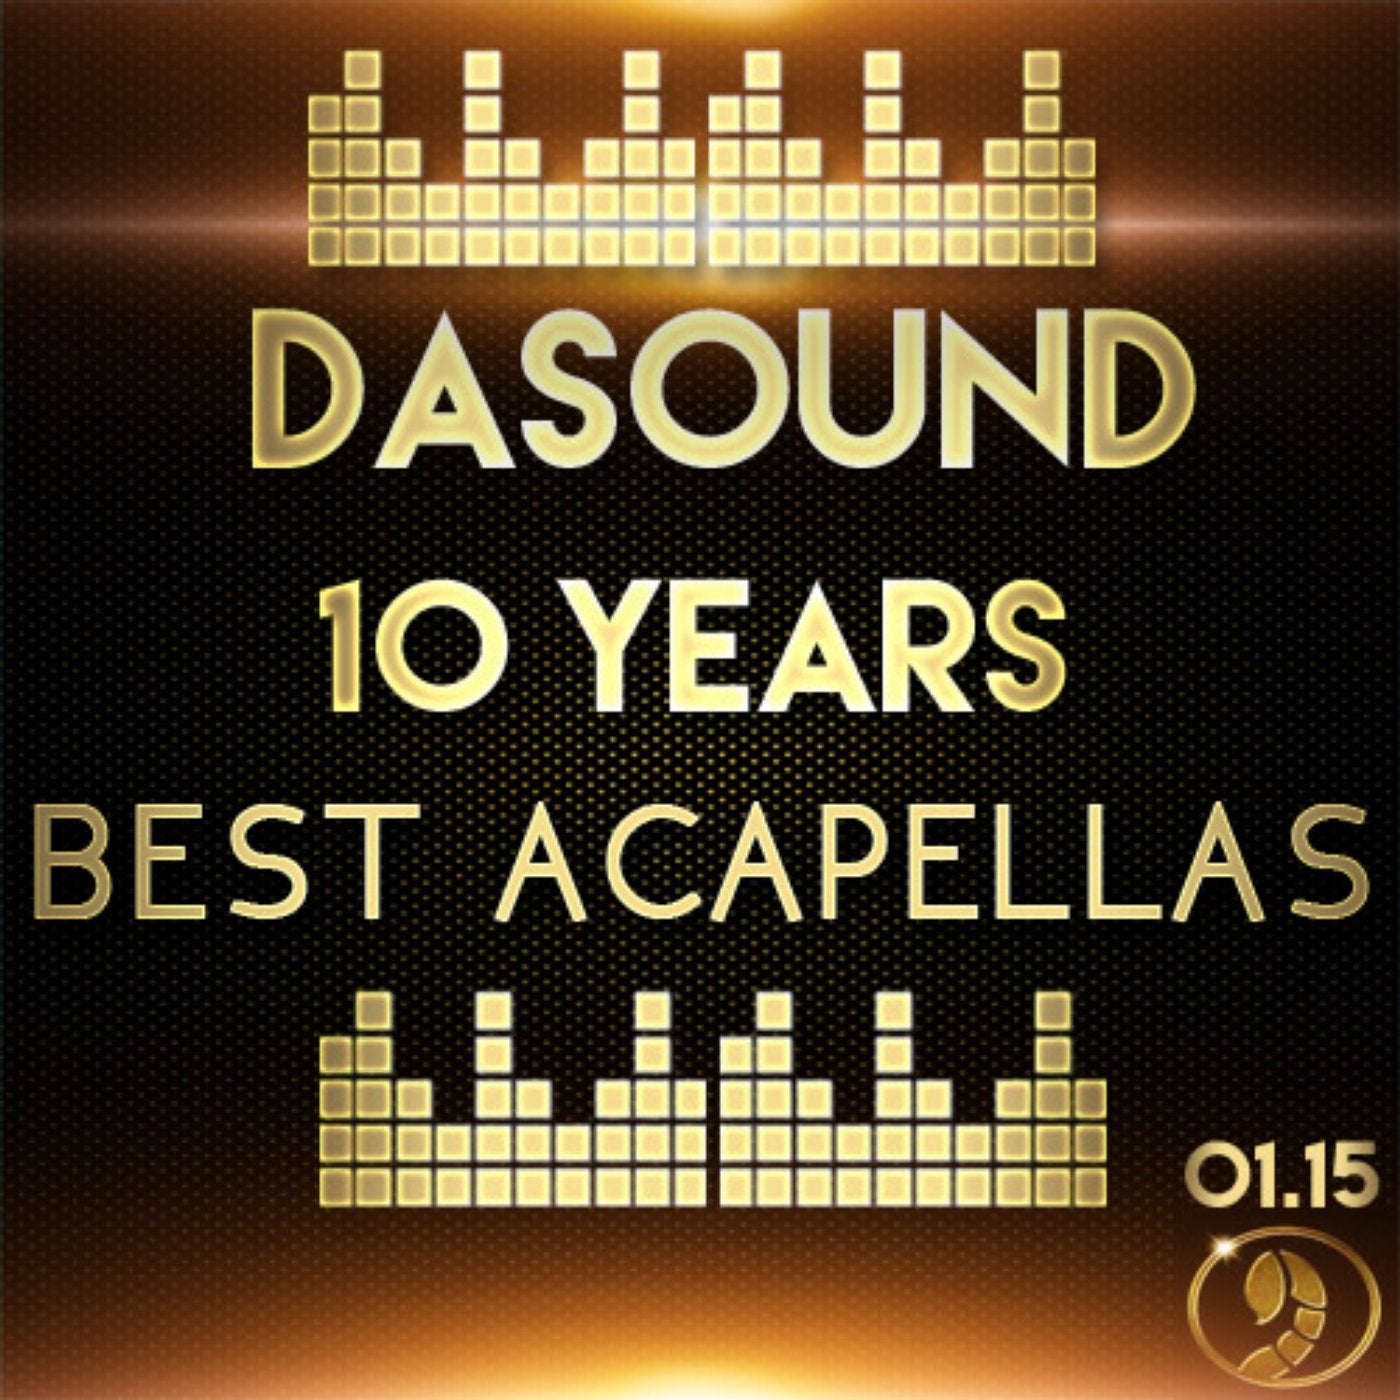 Best Acapellas 01.15